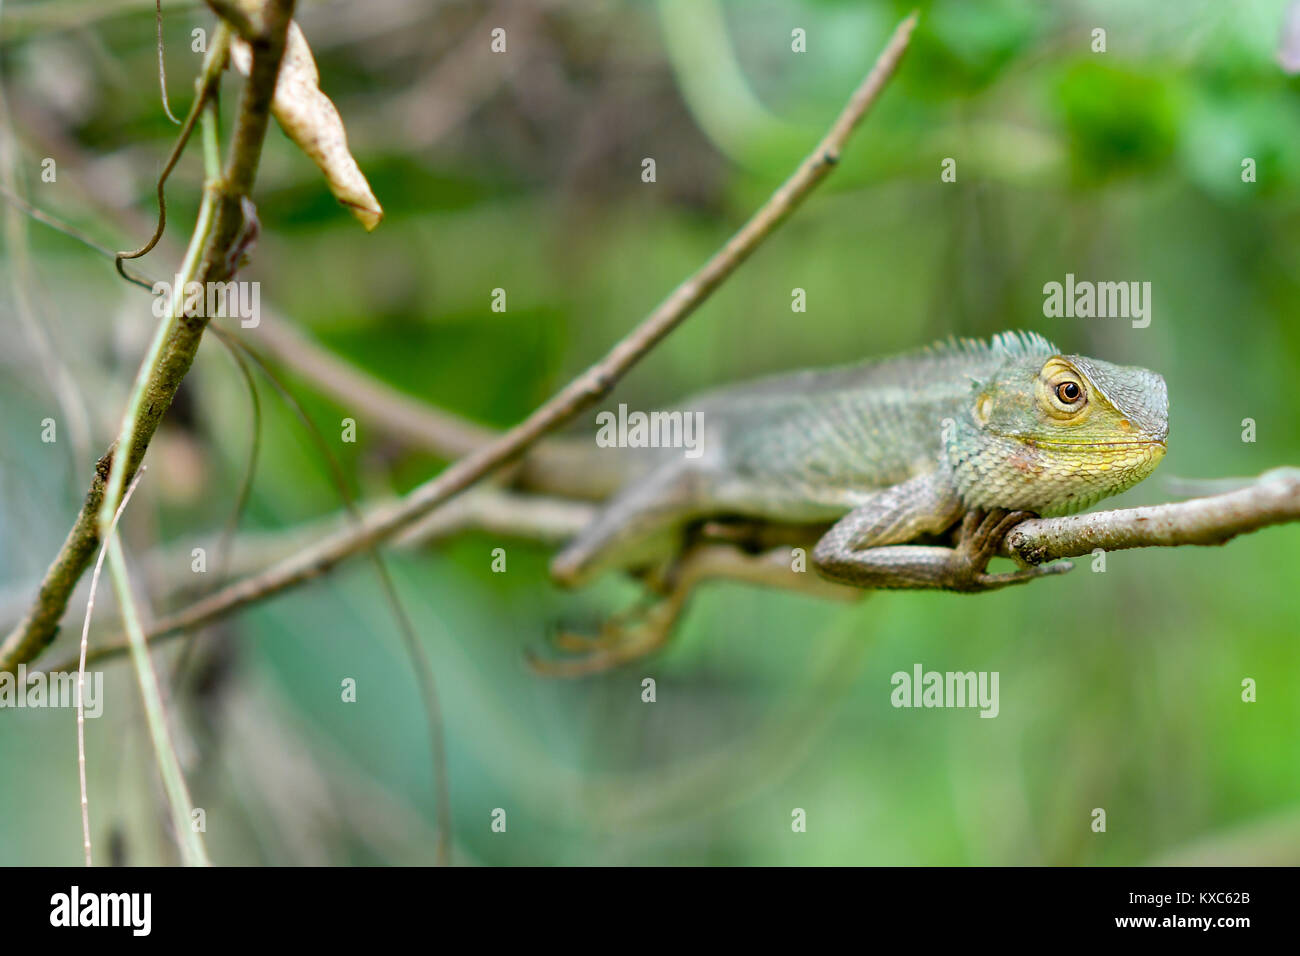 Chameleon resting Stock Photo